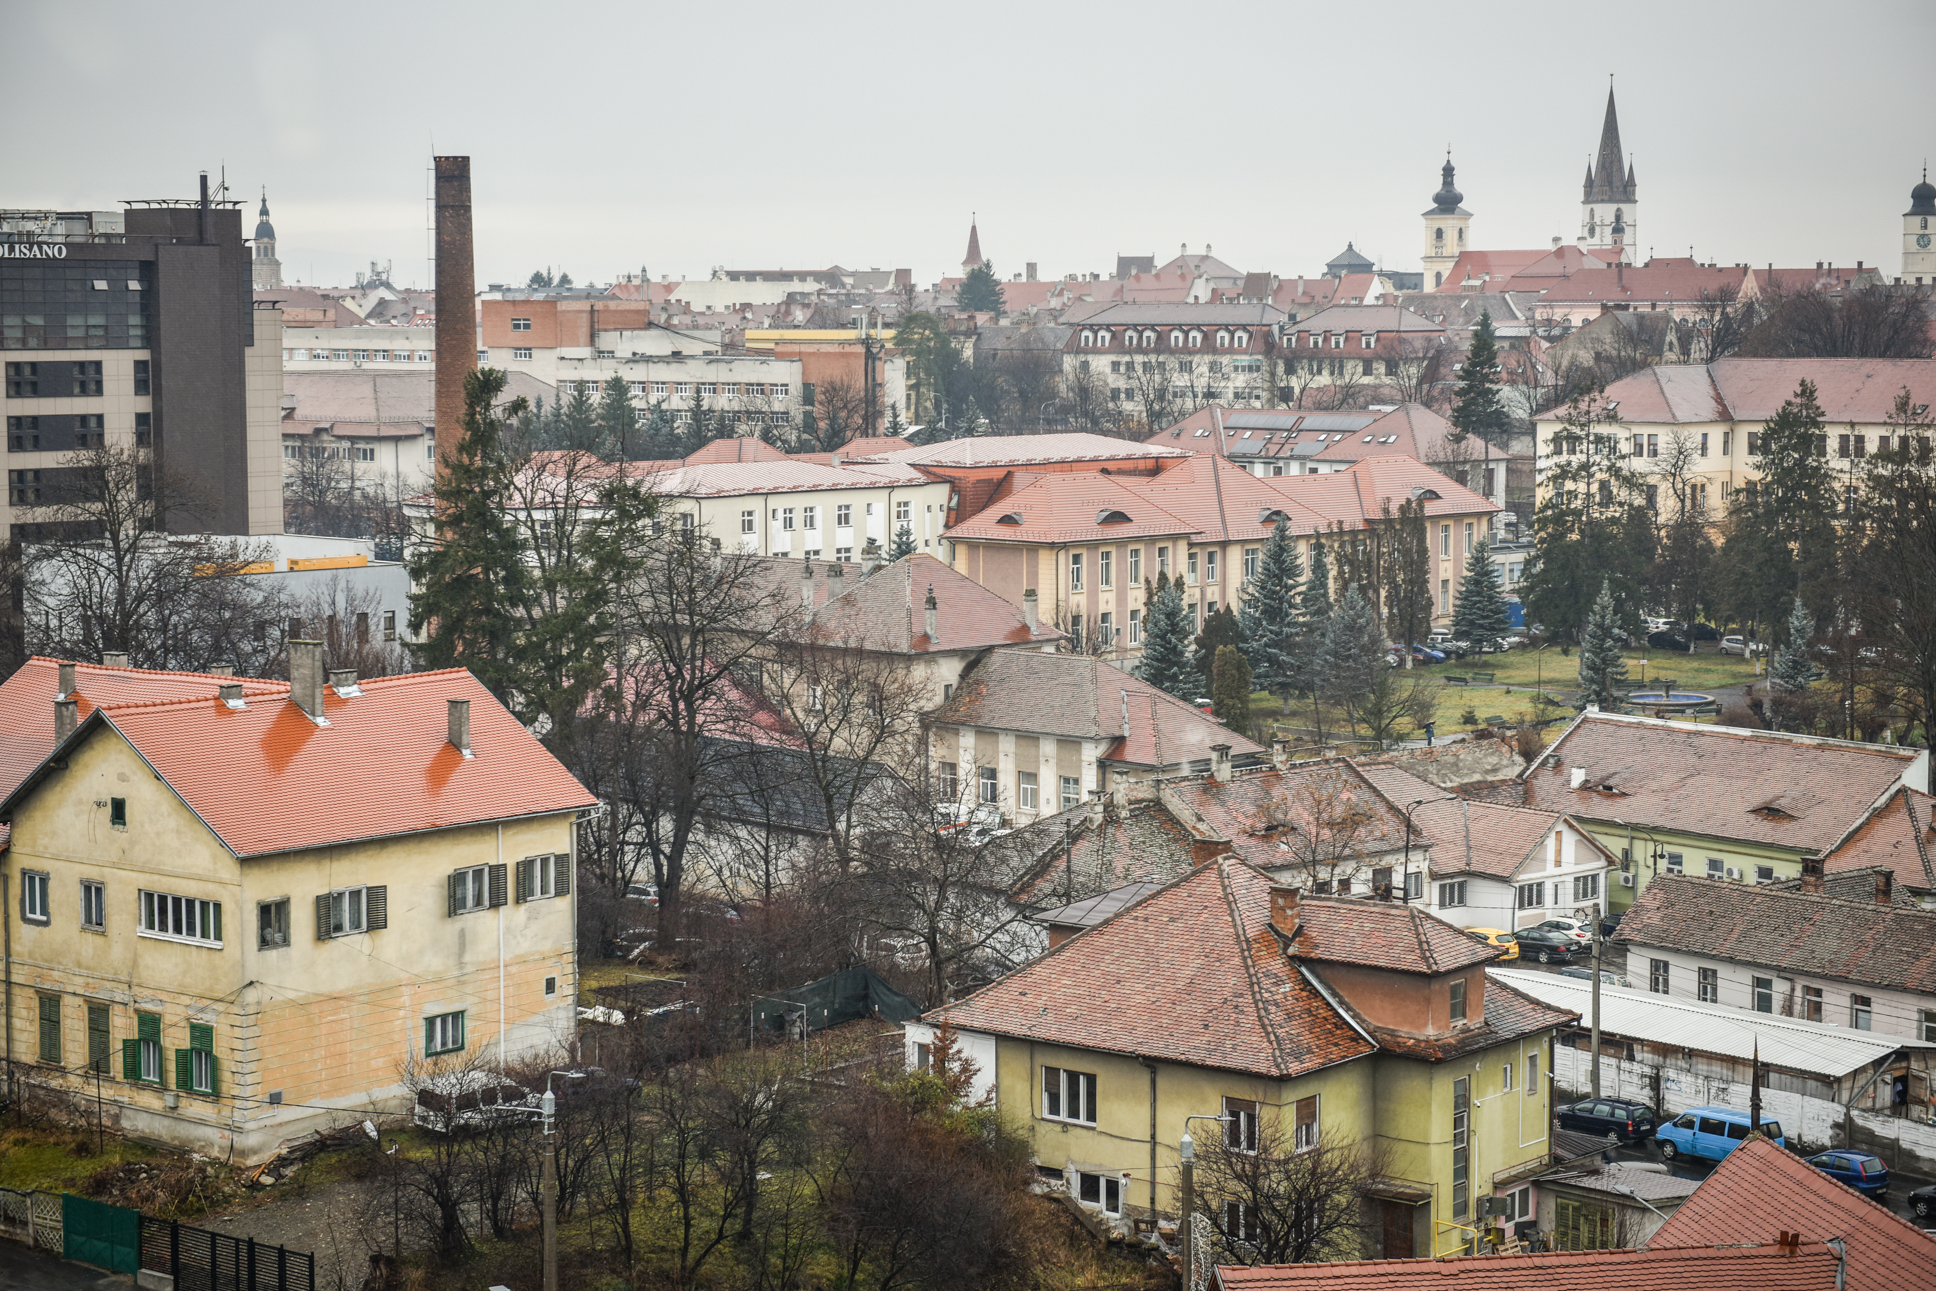 Noile proiecte propuse pentru bugetul Sibiului: de la achiziții de terenuri, la pasaje subterane, parcuri și o zi a Sibiului